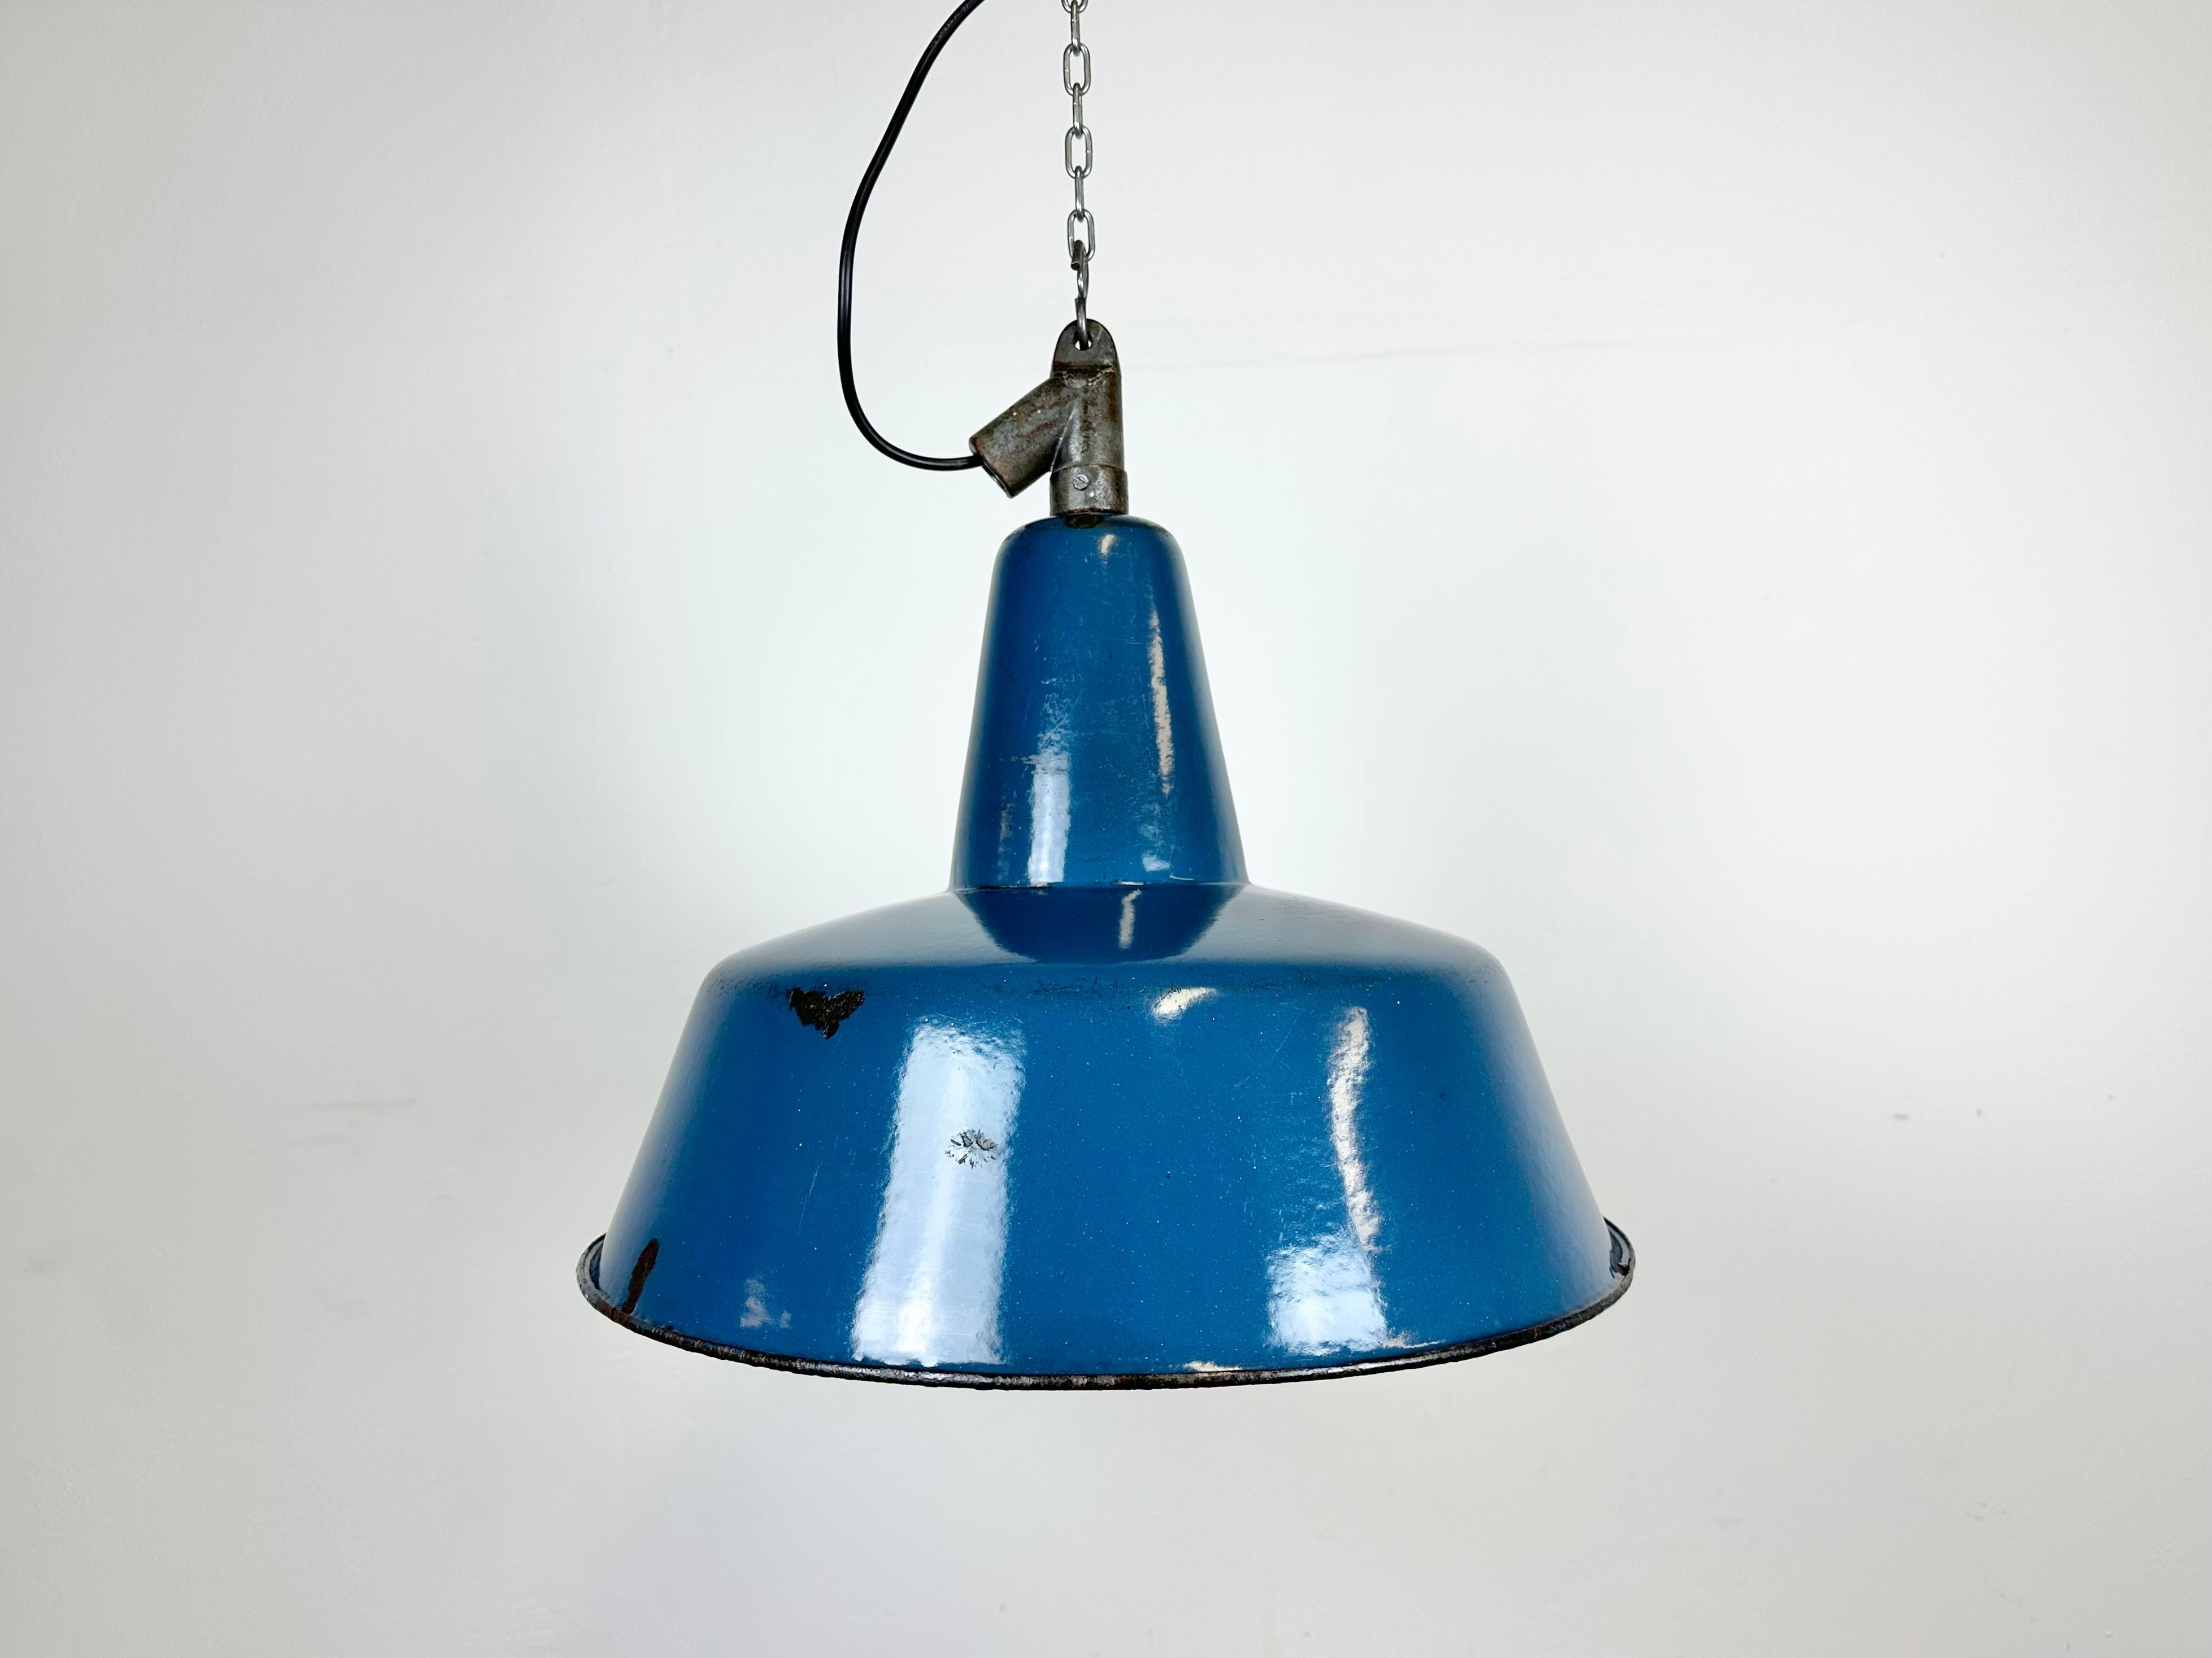 Lampe pendante industrielle en émail bleu fabriquée en Pologne dans les années 1960. Émail blanc à l'intérieur de la teinte. Dessus en fonte. La douille en porcelaine nécessite des ampoules E 27/ E 26. Un nouveau fil. Le poids de la lampe est de 2,5